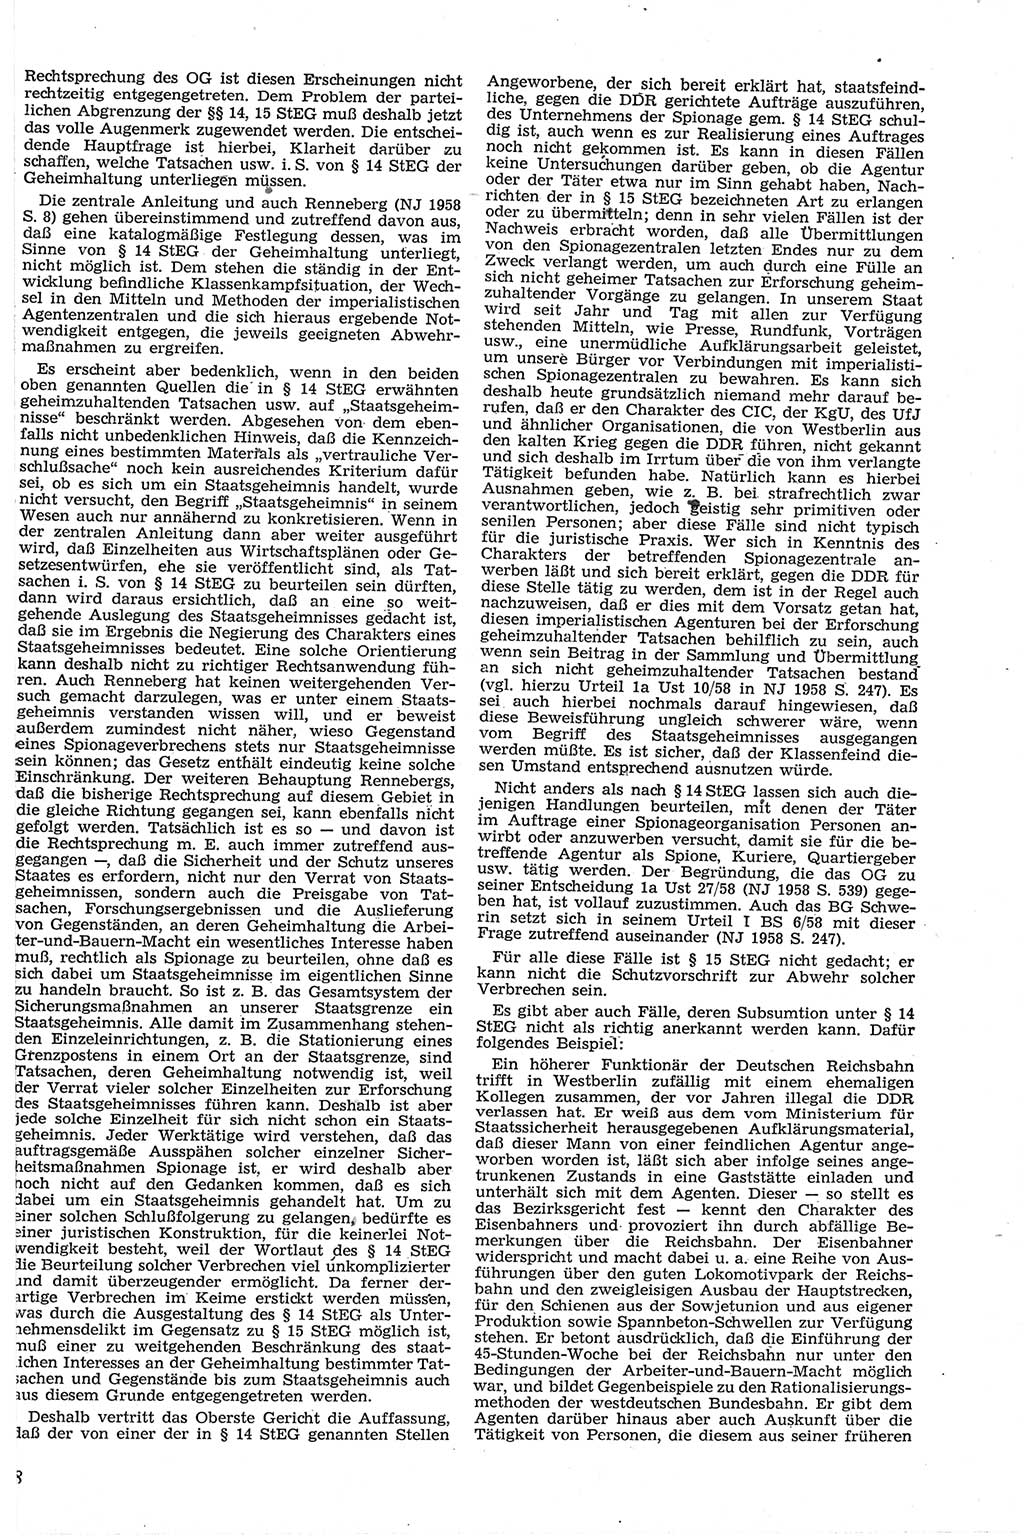 Neue Justiz (NJ), Zeitschrift für Recht und Rechtswissenschaft [Deutsche Demokratische Republik (DDR)], 13. Jahrgang 1959, Seite 8 (NJ DDR 1959, S. 8)